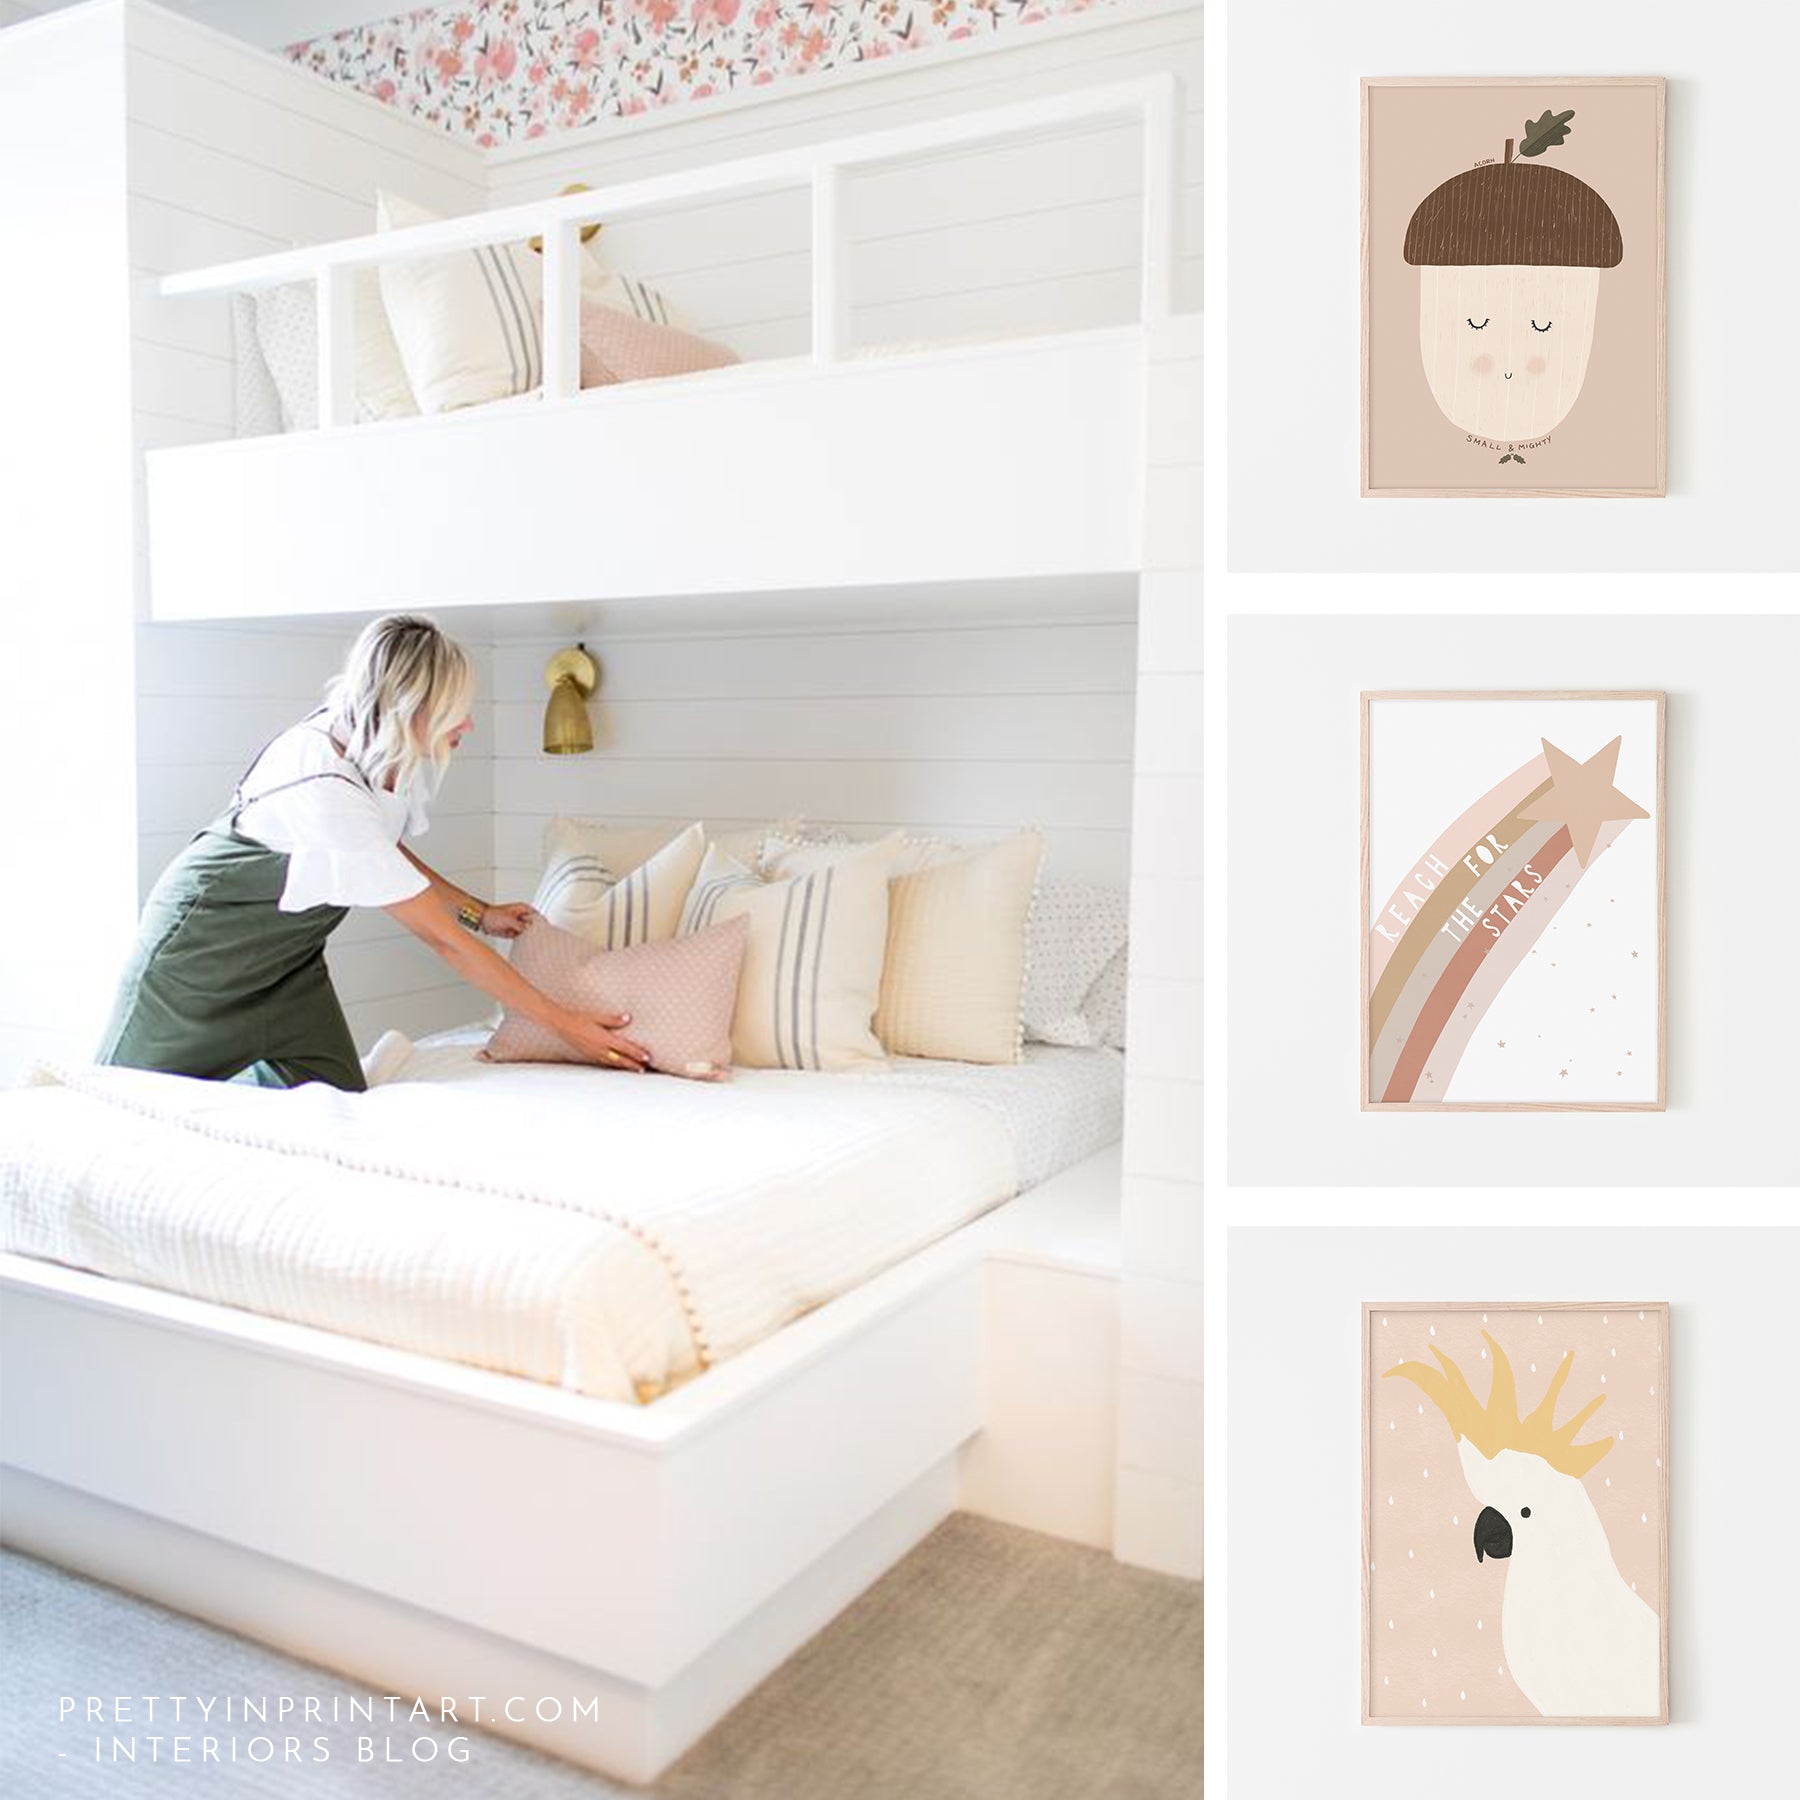 shared-kids-bedroom-ideas-bunk-beds-diy-loft-bed-childs-room-pink-bedroom-decor-kids-art-posters-prints